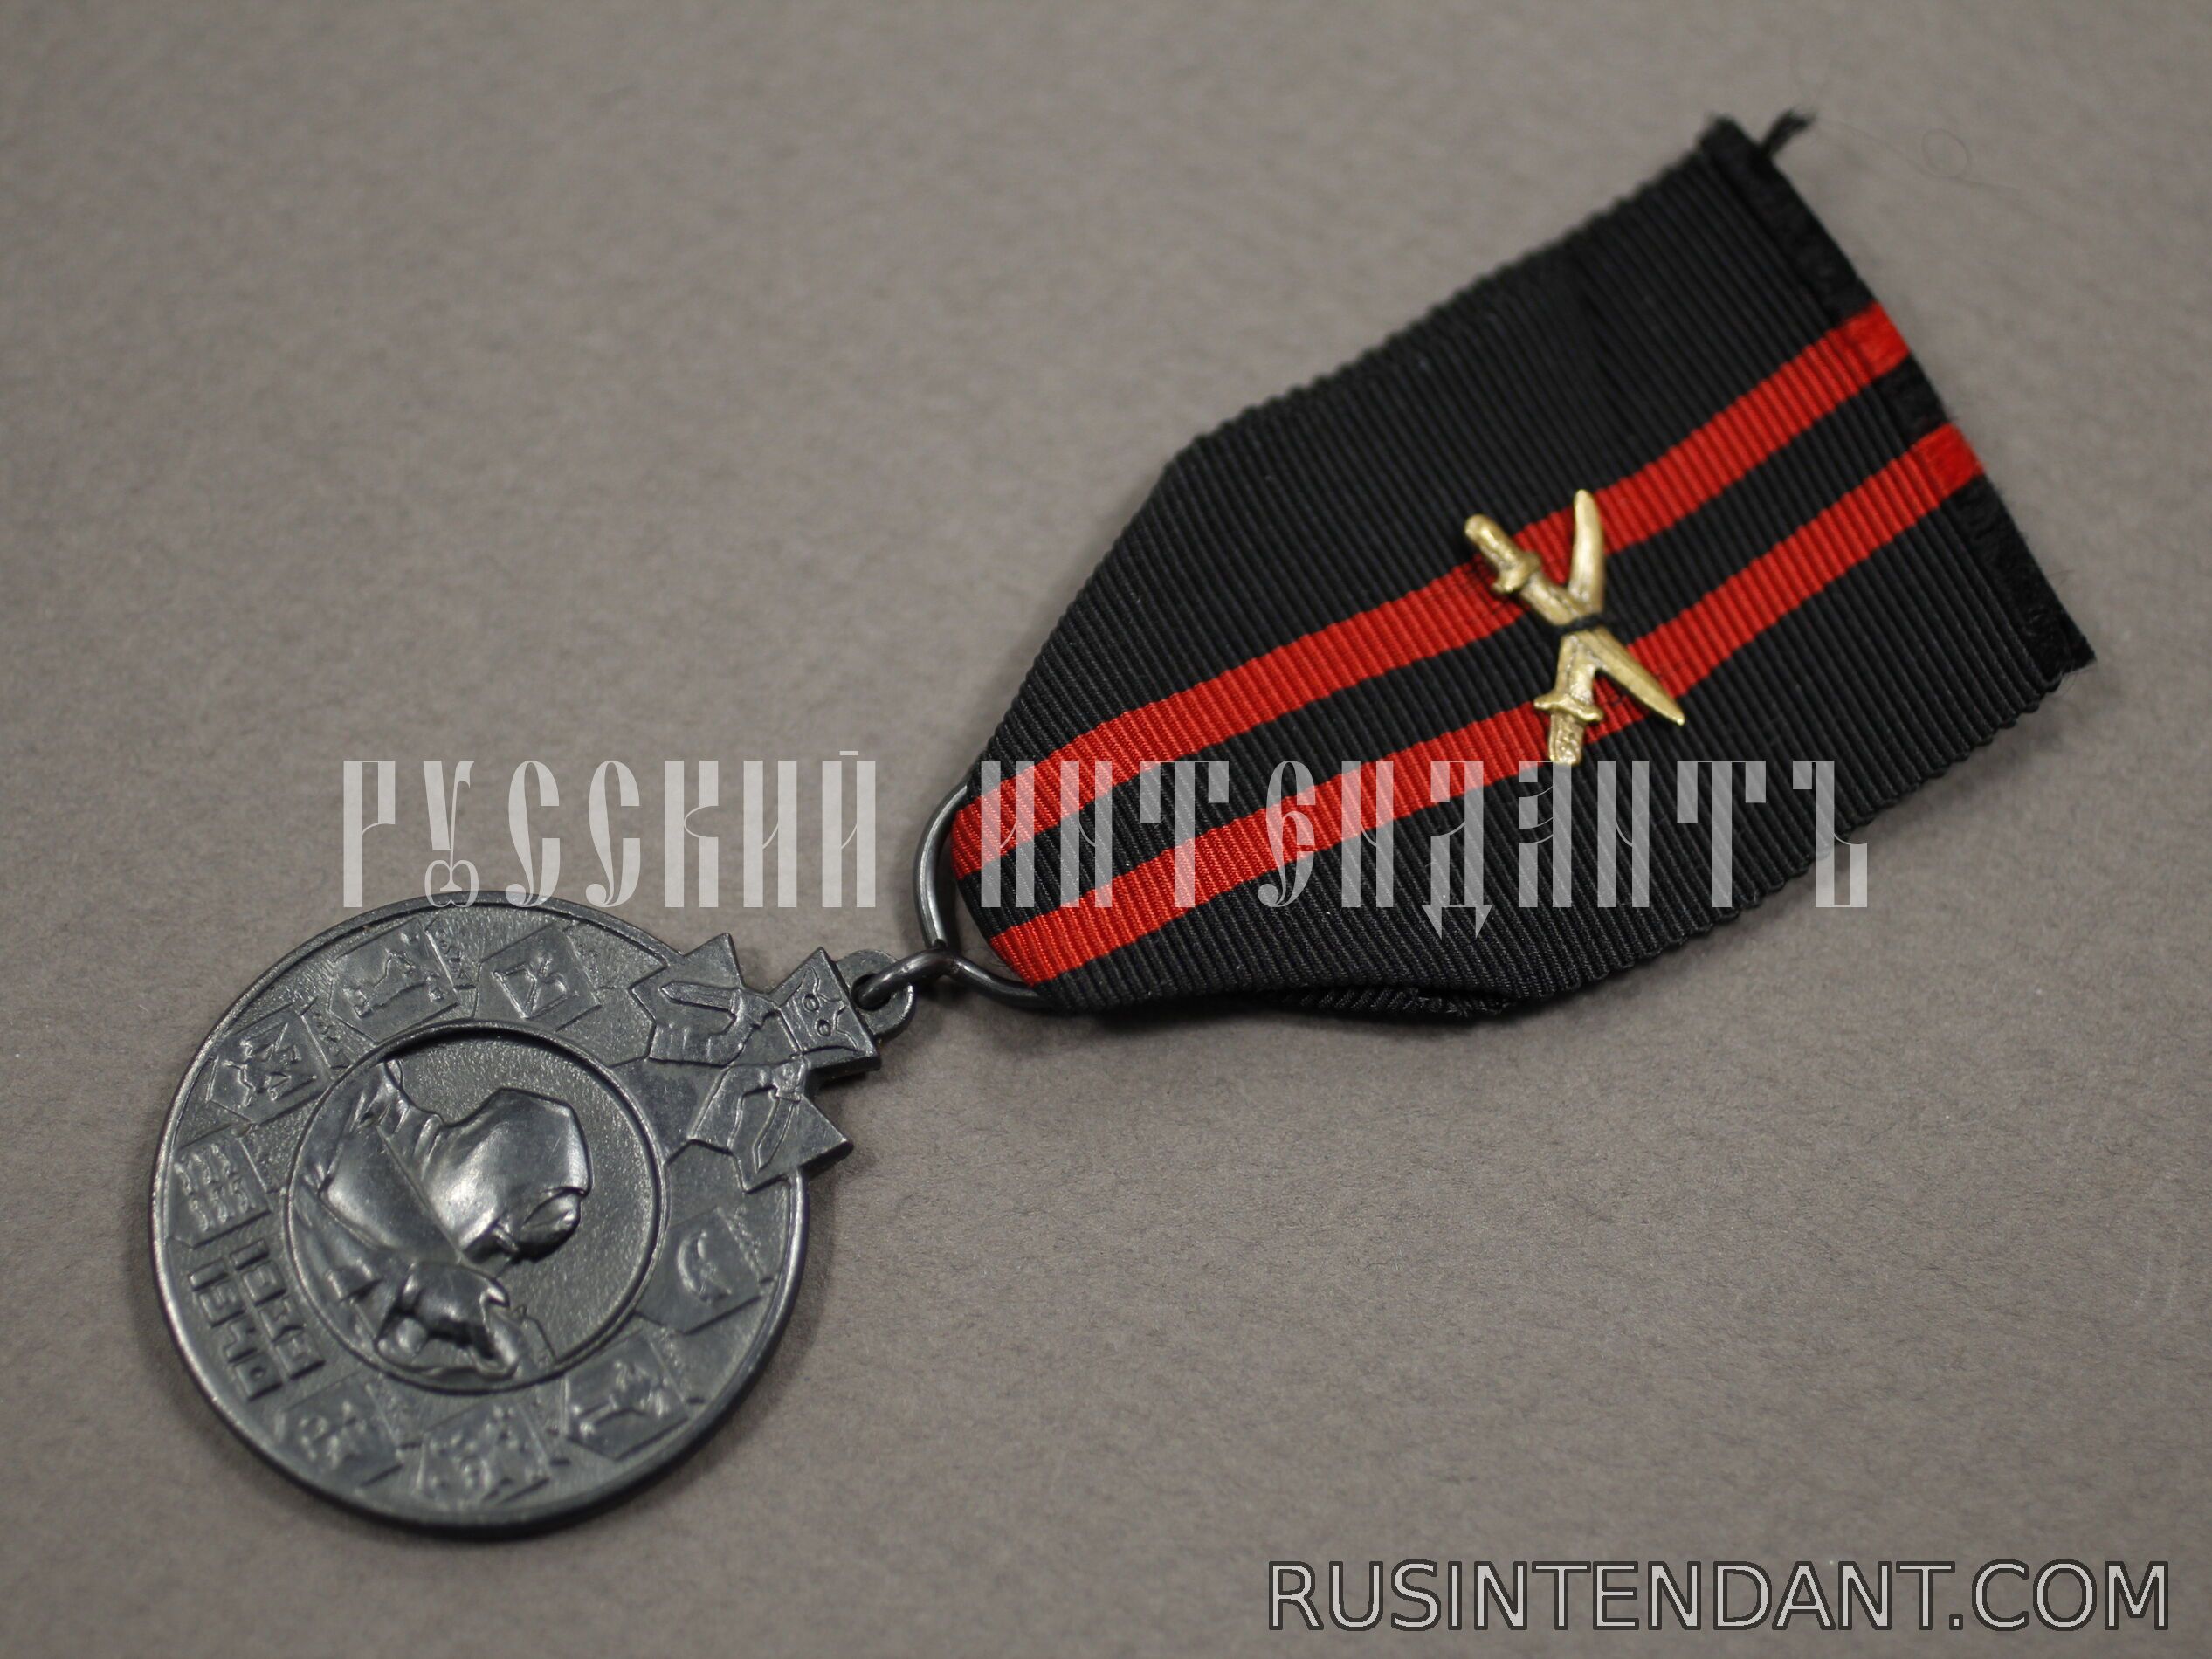 Фото 3: Медаль зимней войны 1939-1940 